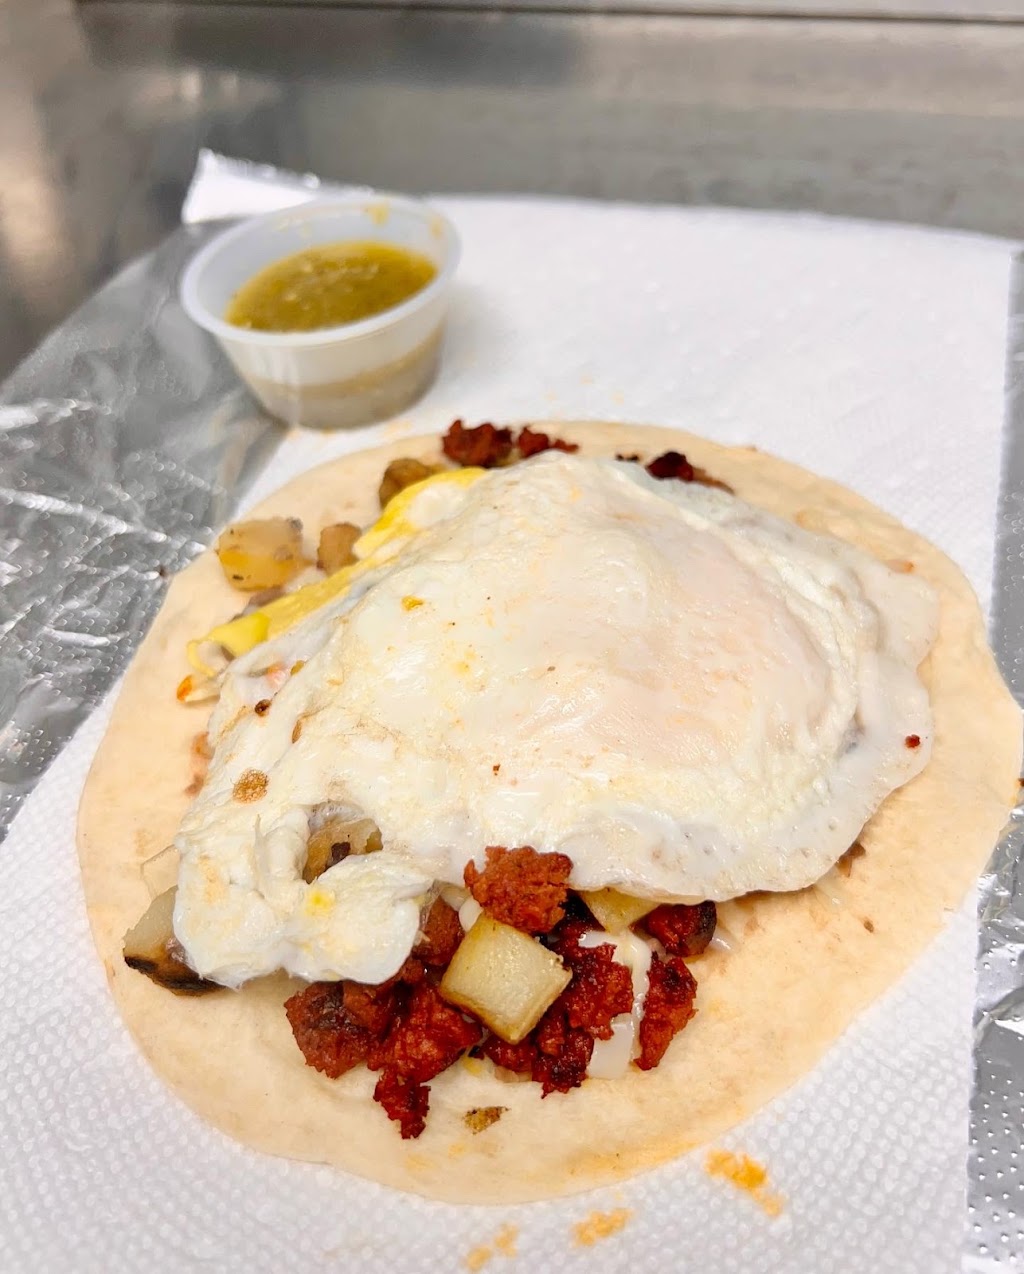 Early Bird Tacos | restaurant | 355 S Main St, Cave Springs, AR 72718, USA | 4793018777 OR +1 479-301-8777